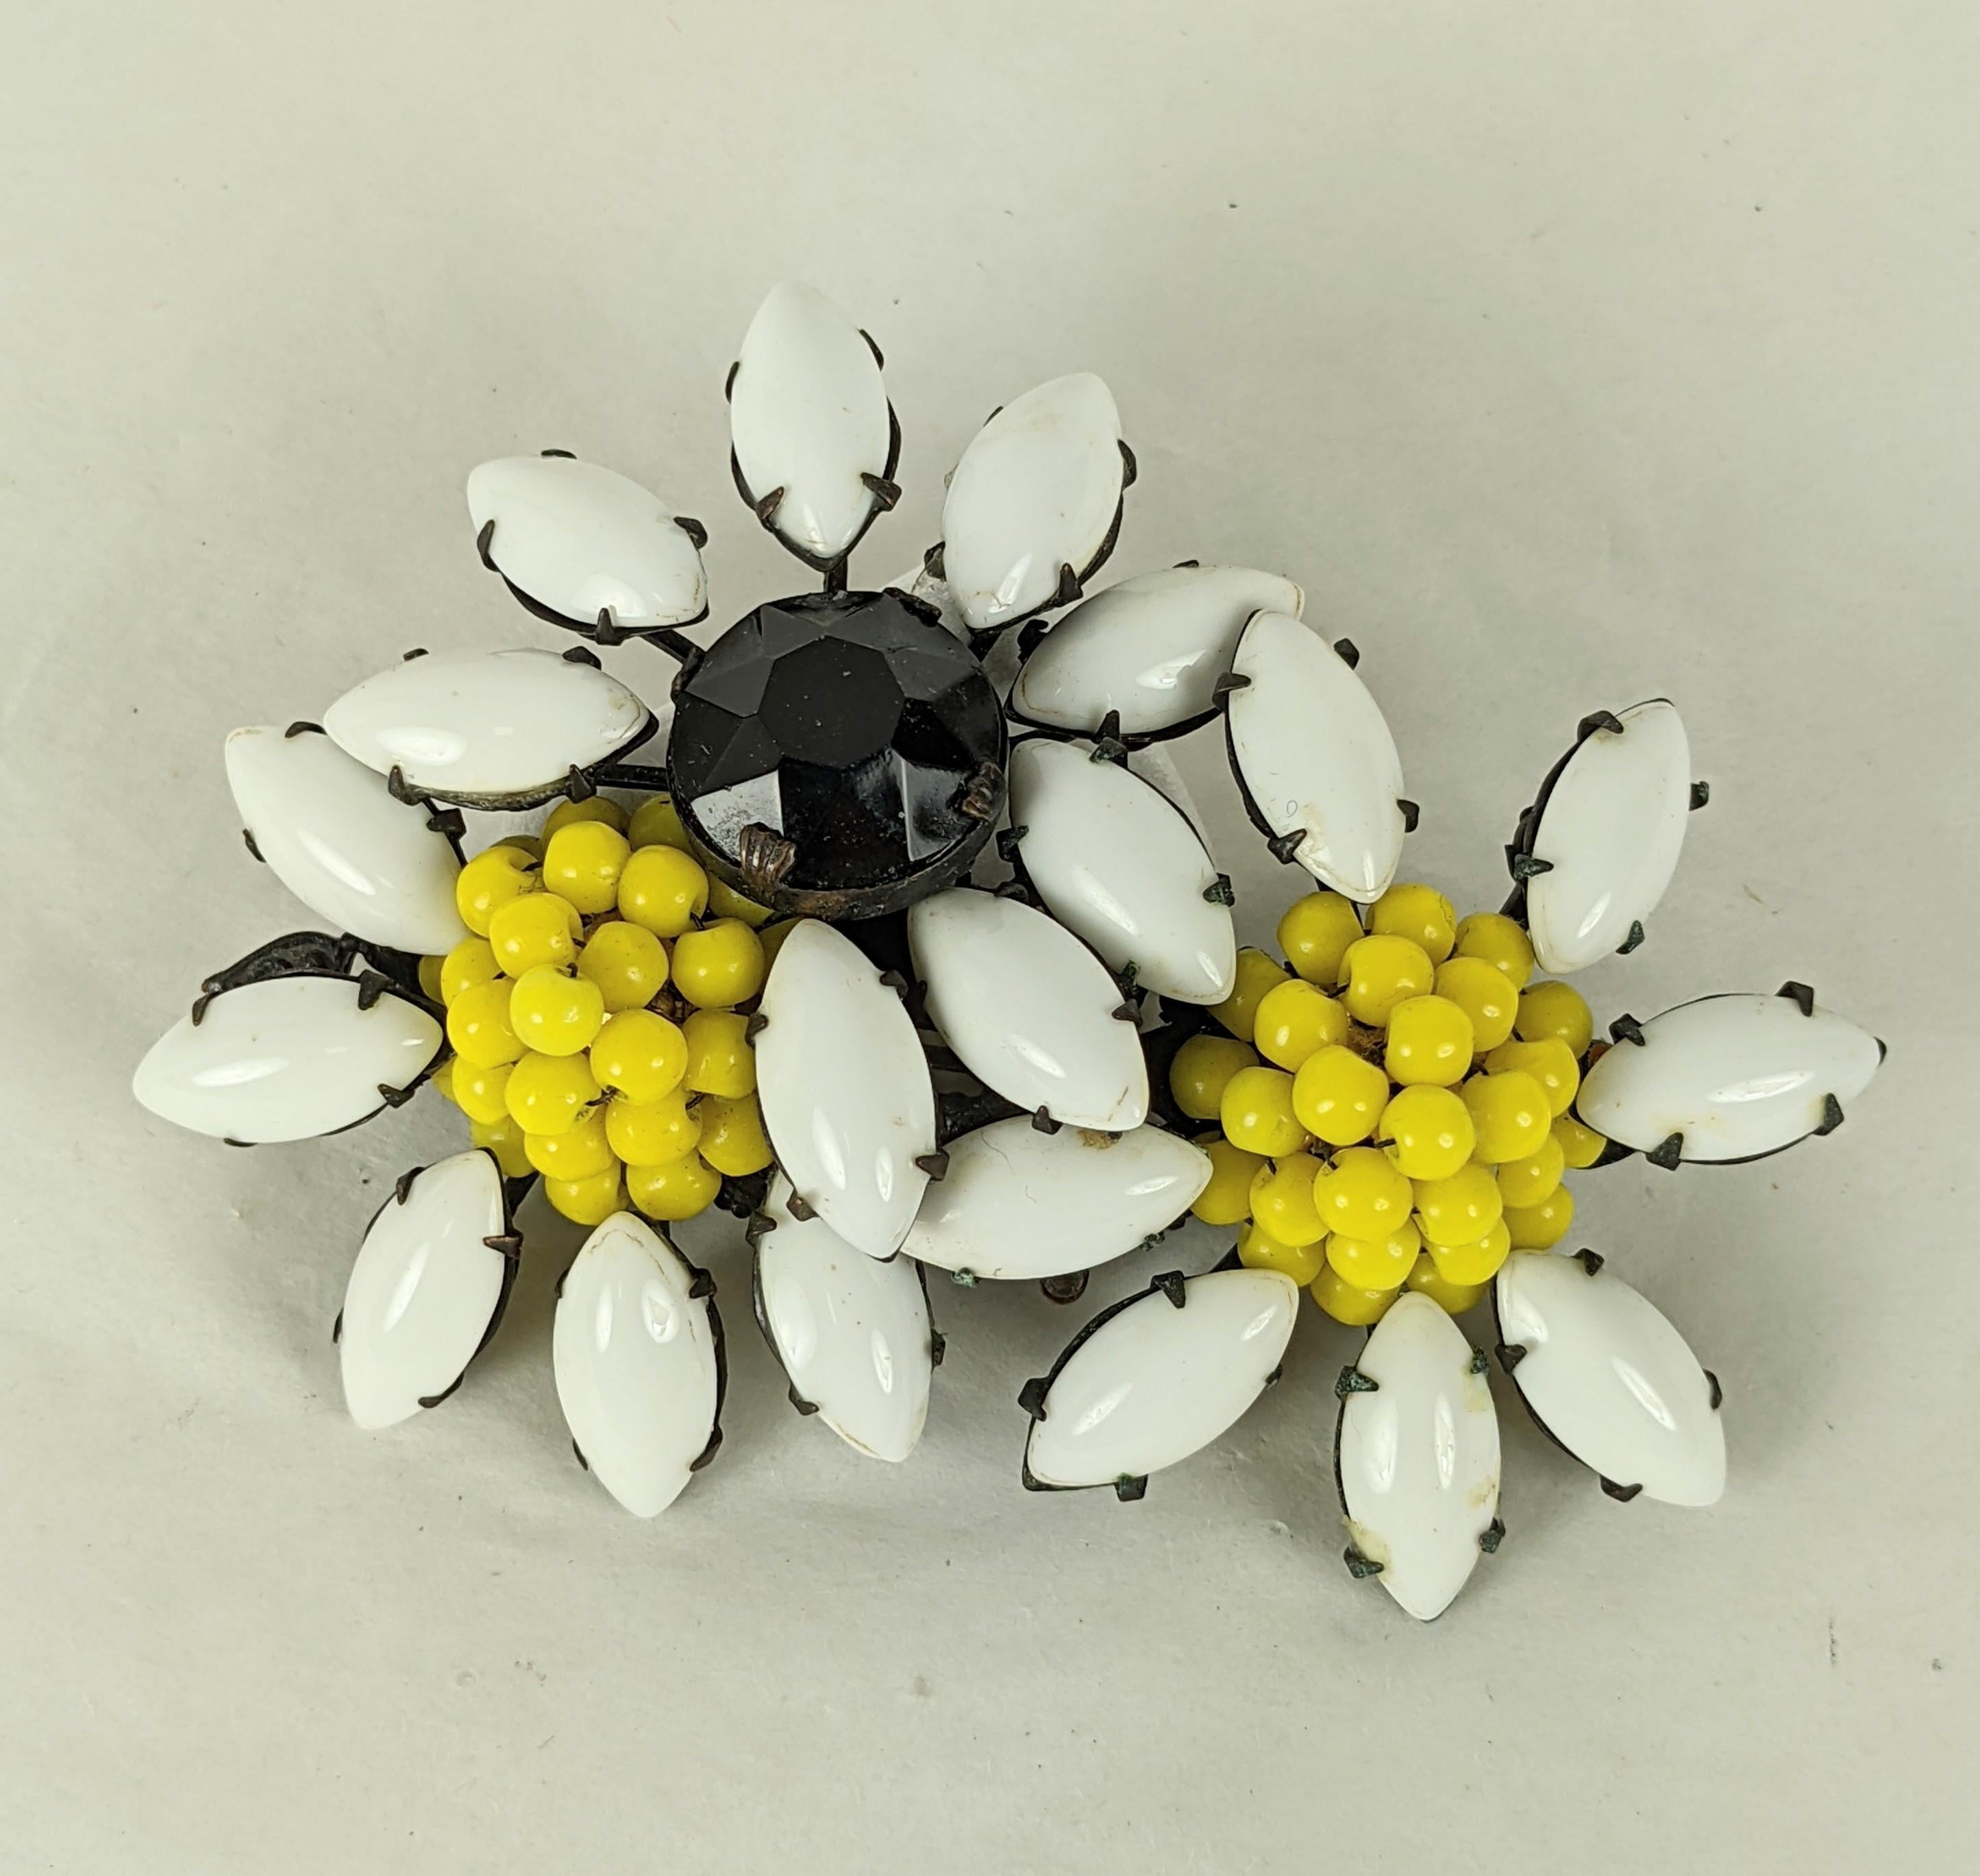 Broche Daisy Cluster de Miriam Haskell, composée de navettes en verre laiteux avec des centres en perles jaunes chromées brodées et en cristal de jais, serties dans un métal noirci. Signé, années 1950, USA.
3.25